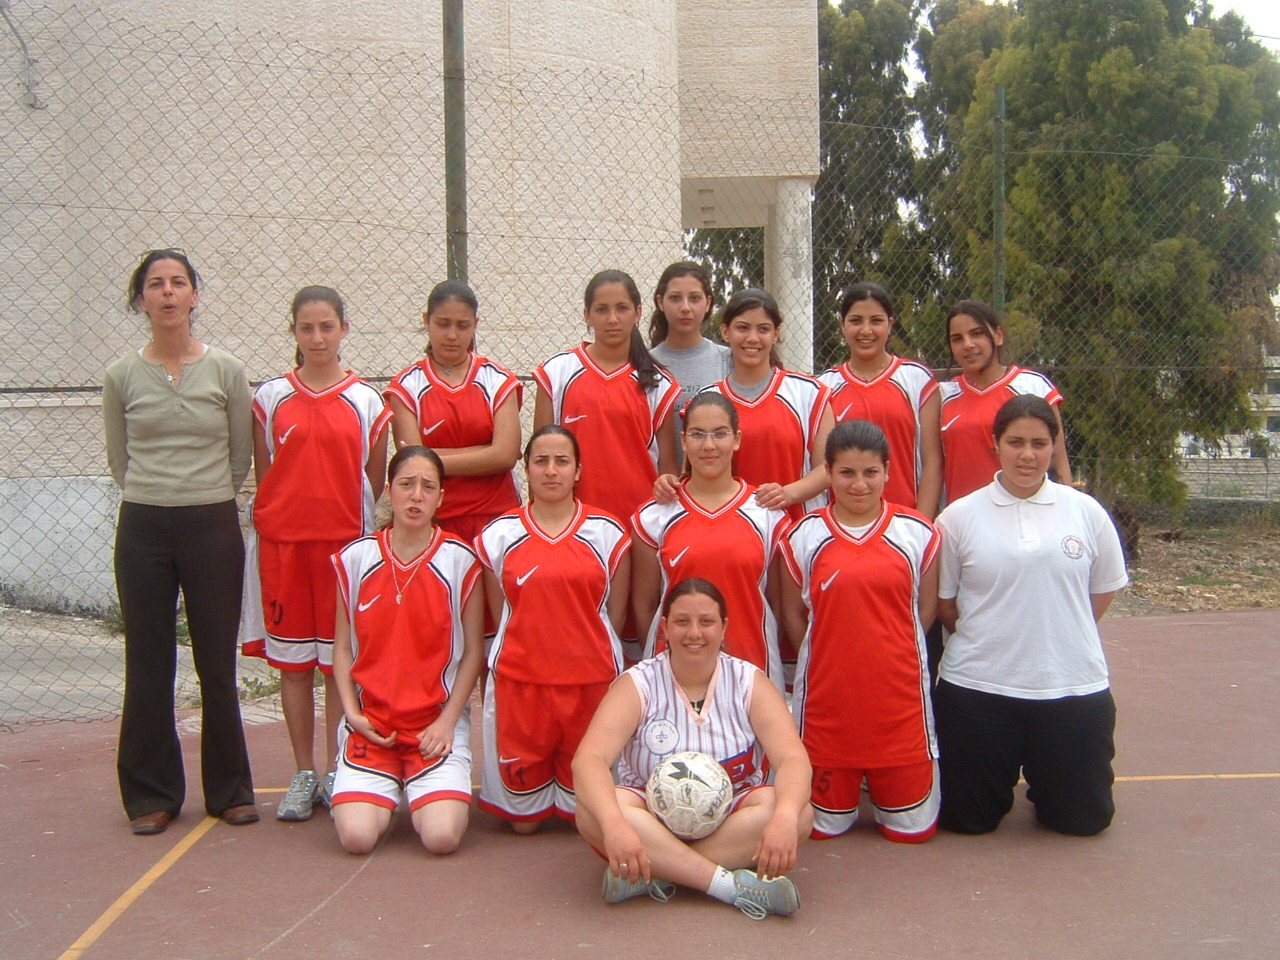 Girls Soccer (Football) Team